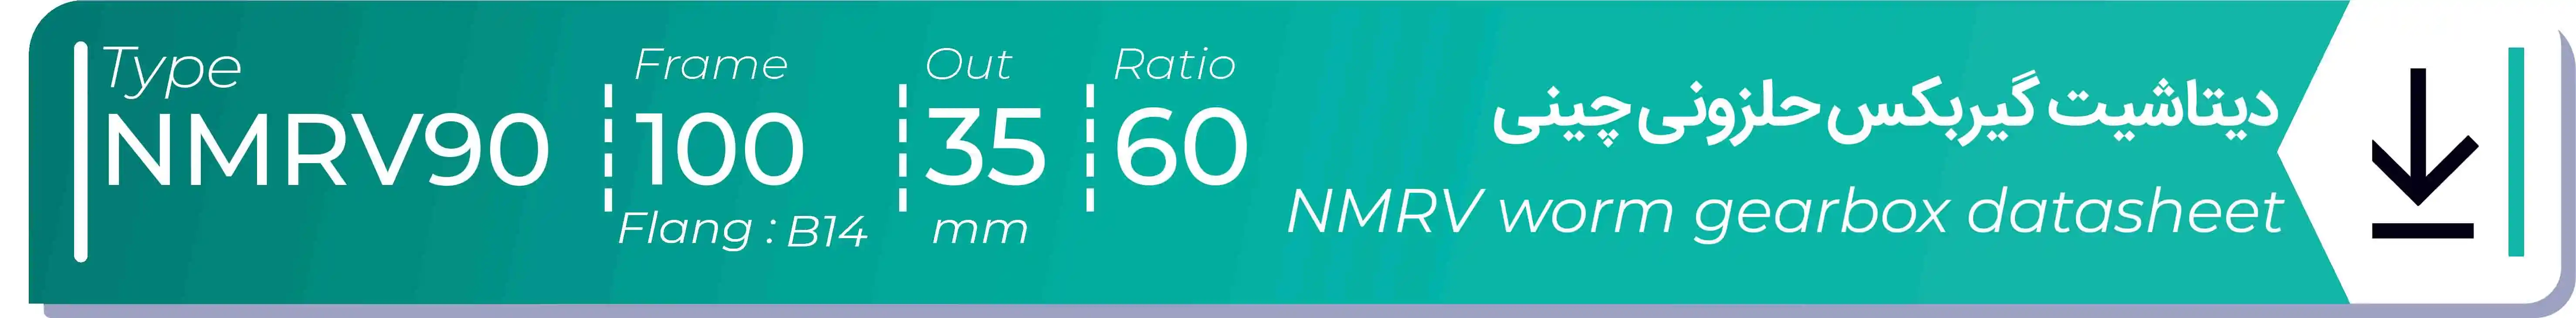  دیتاشیت و مشخصات فنی گیربکس حلزونی چینی   NMRV90  -  با خروجی 35- میلی متر و نسبت60 و فریم 100